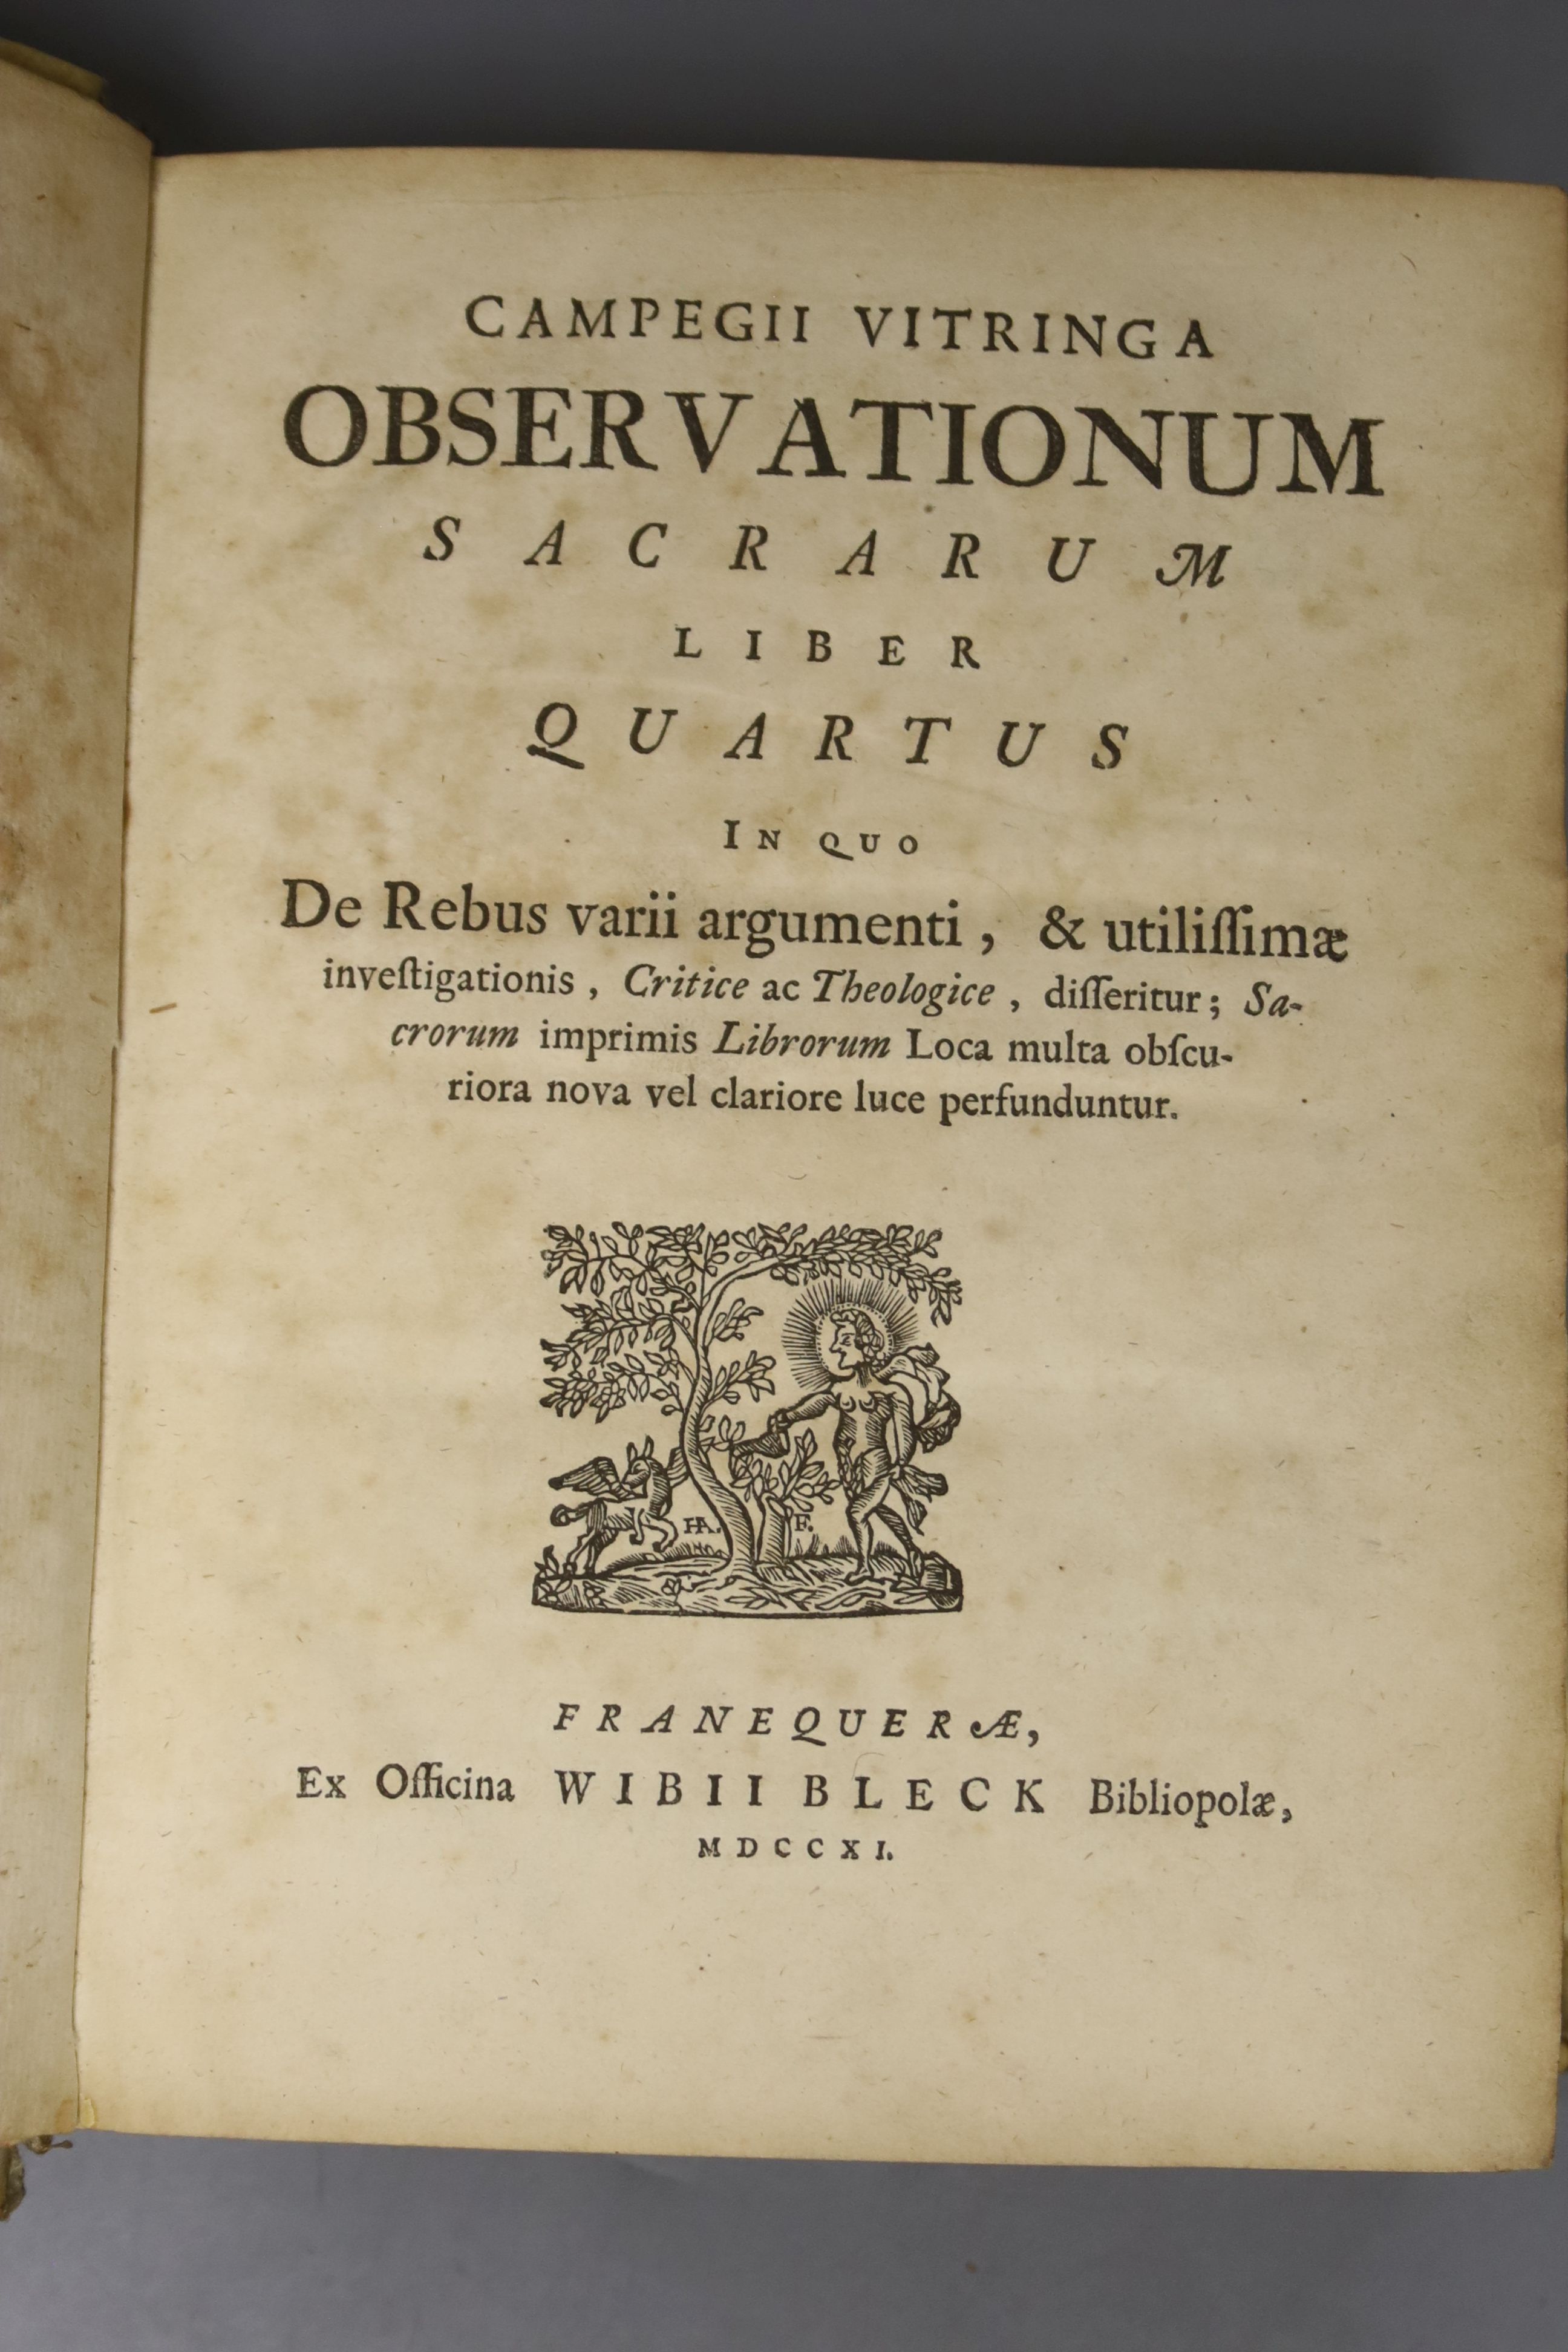 Observationum Sacrarum Liber Quartus 1711, one vol. and Quintus Horatious Flaccus, 1628?